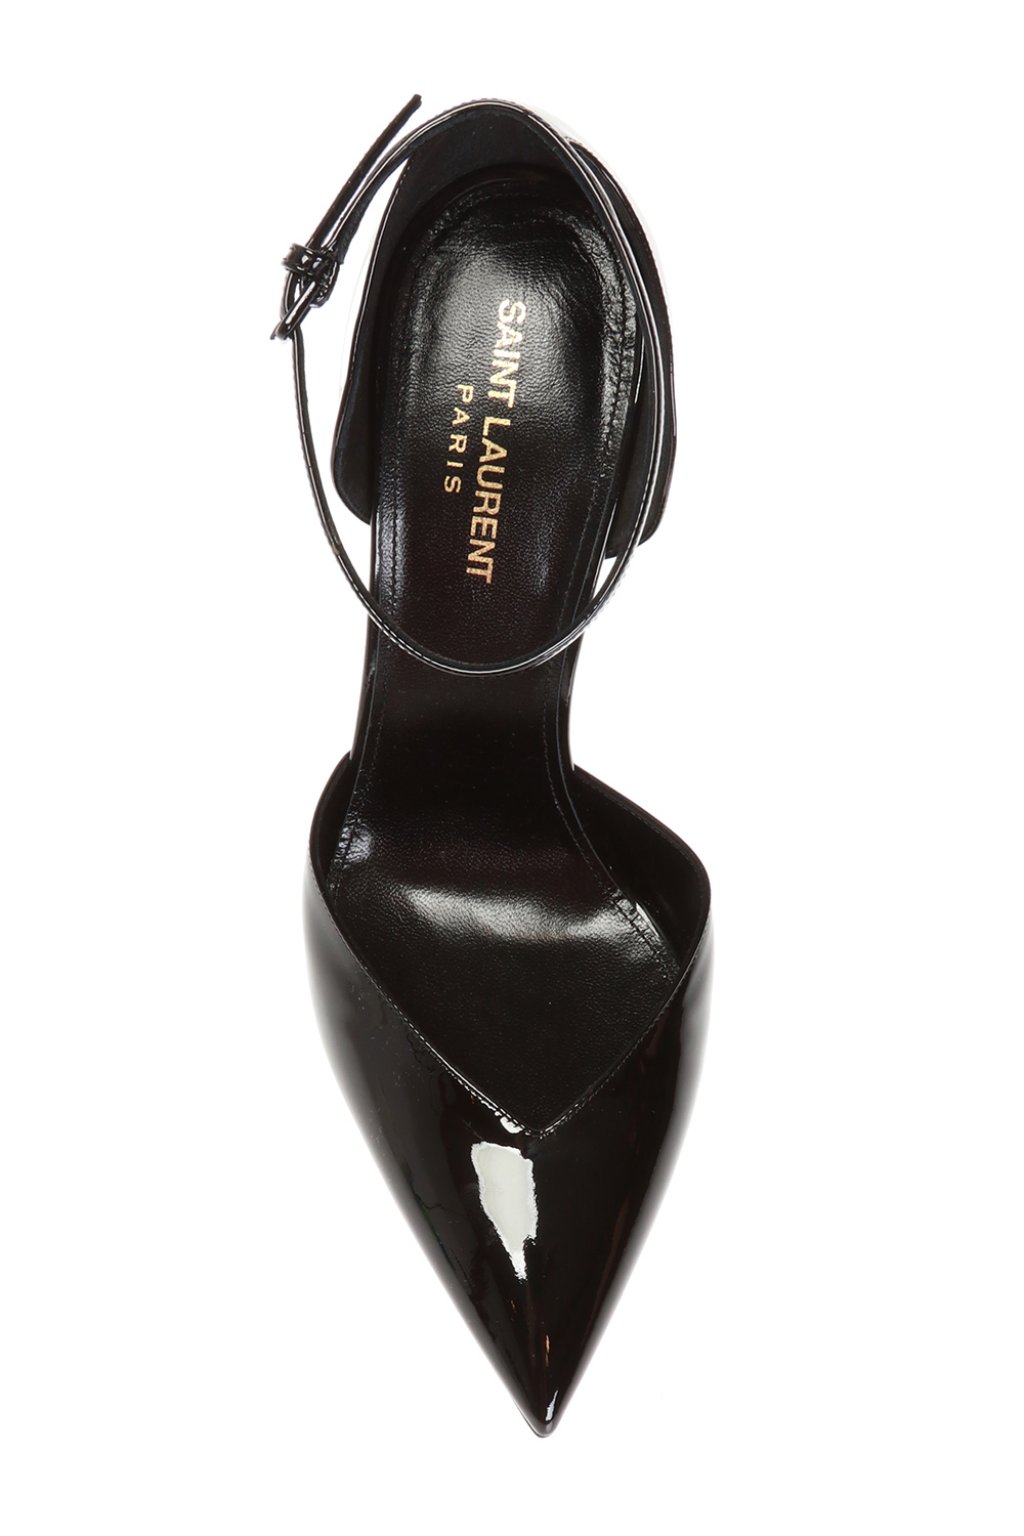 Saint Laurent - Opyum Patent Leather Pumps - Women - Patent Leather/LeatherLeather - 34.5 - Black